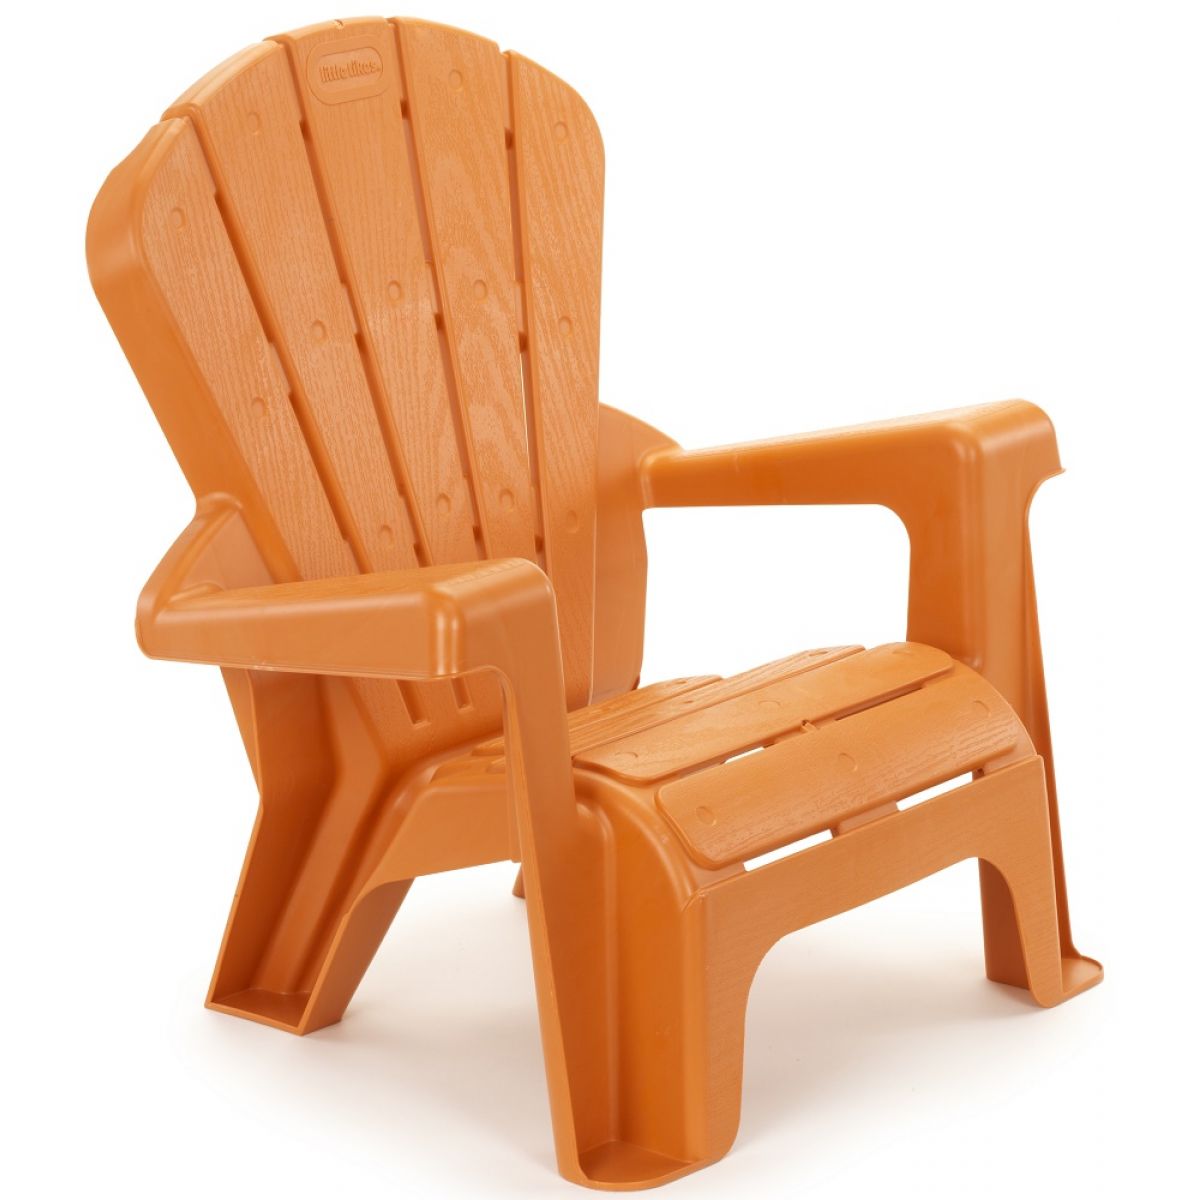 Little Tikes Zahraní židlička oranžová